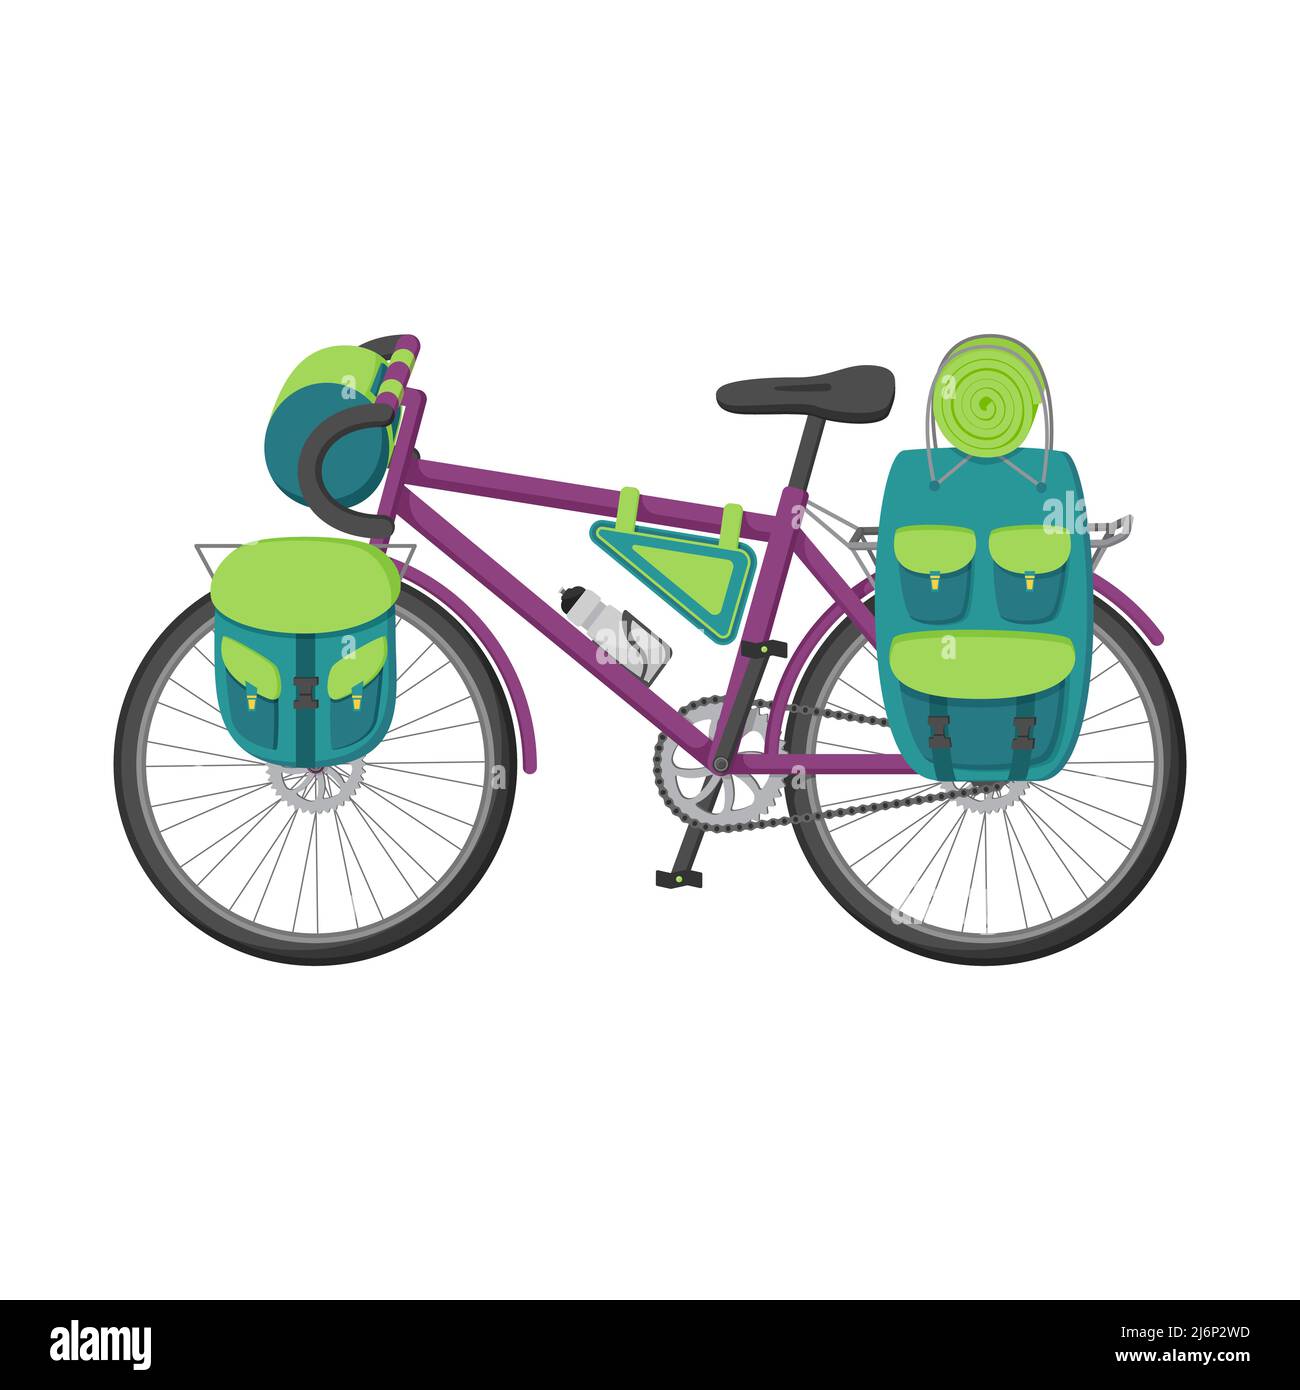 Le vélo est équipé pour les randonnées pédestres, les voyages et les randonnées à vélo. Illustration vectorielle plate d'une moto avec des sacs à dos sur le coffre et le volant. Conce Illustration de Vecteur